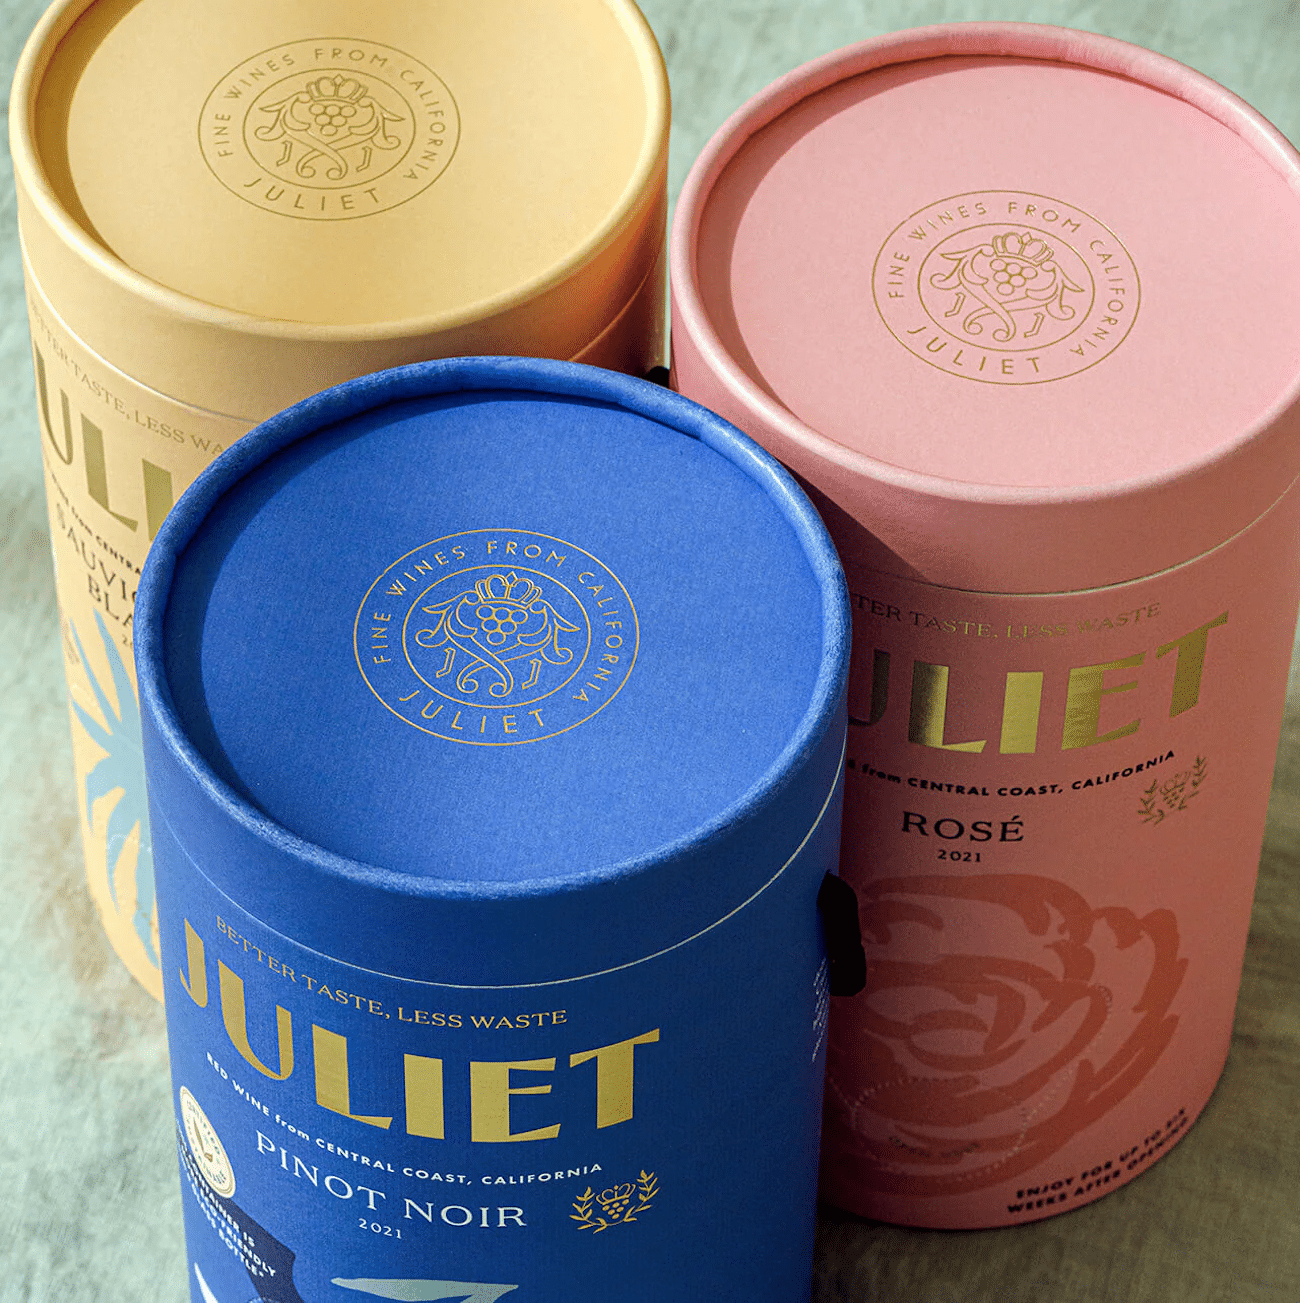 Juliet Wine Packaging Design, drei Sorten, drei illustrierte Weinboxen